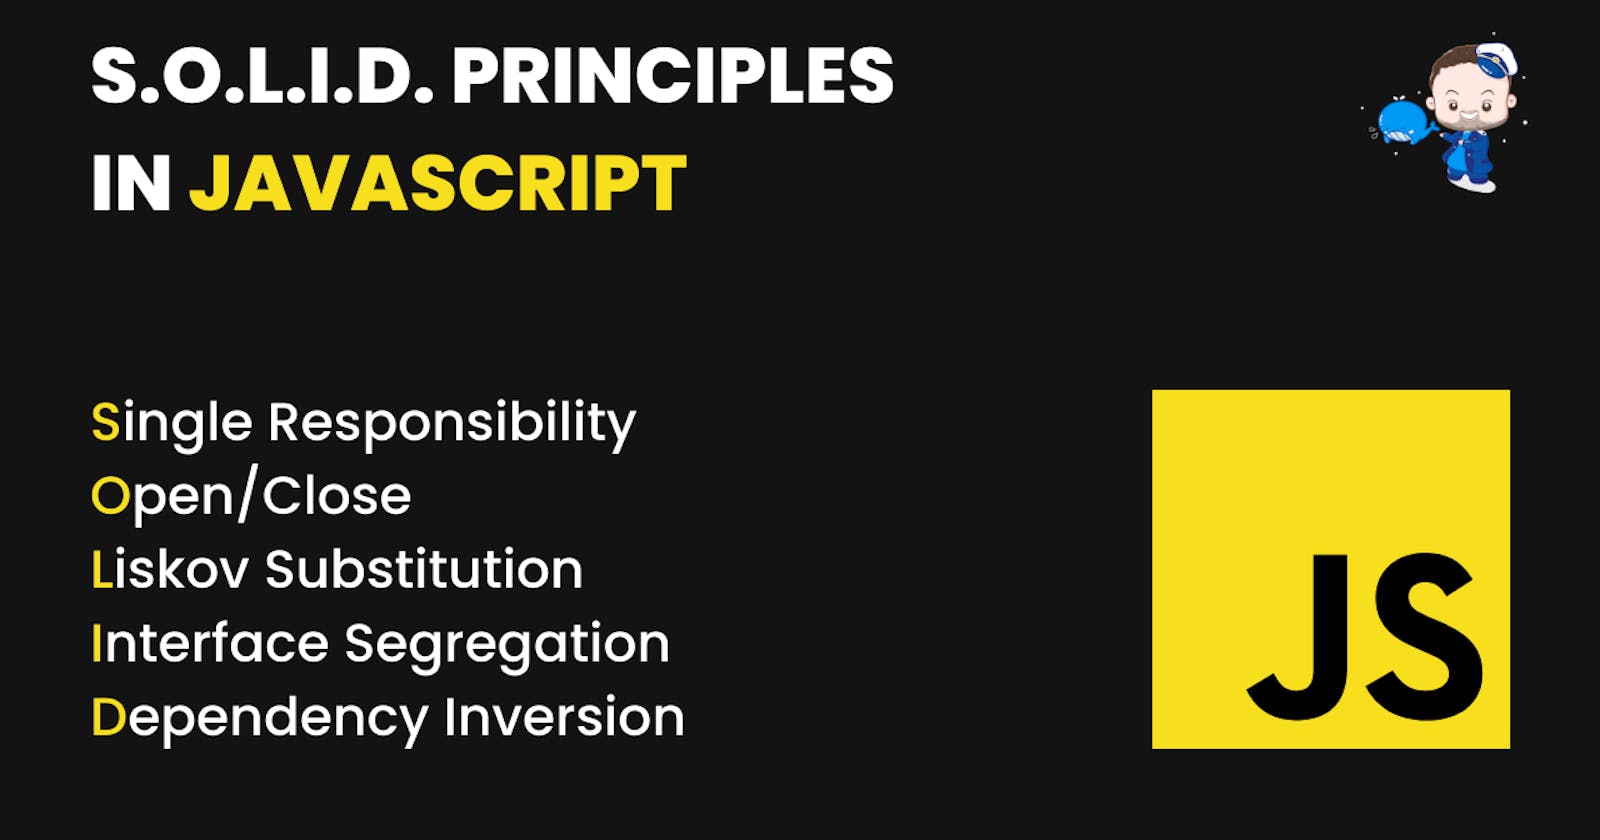 S.O.L.I.D. Principles in JavaScript